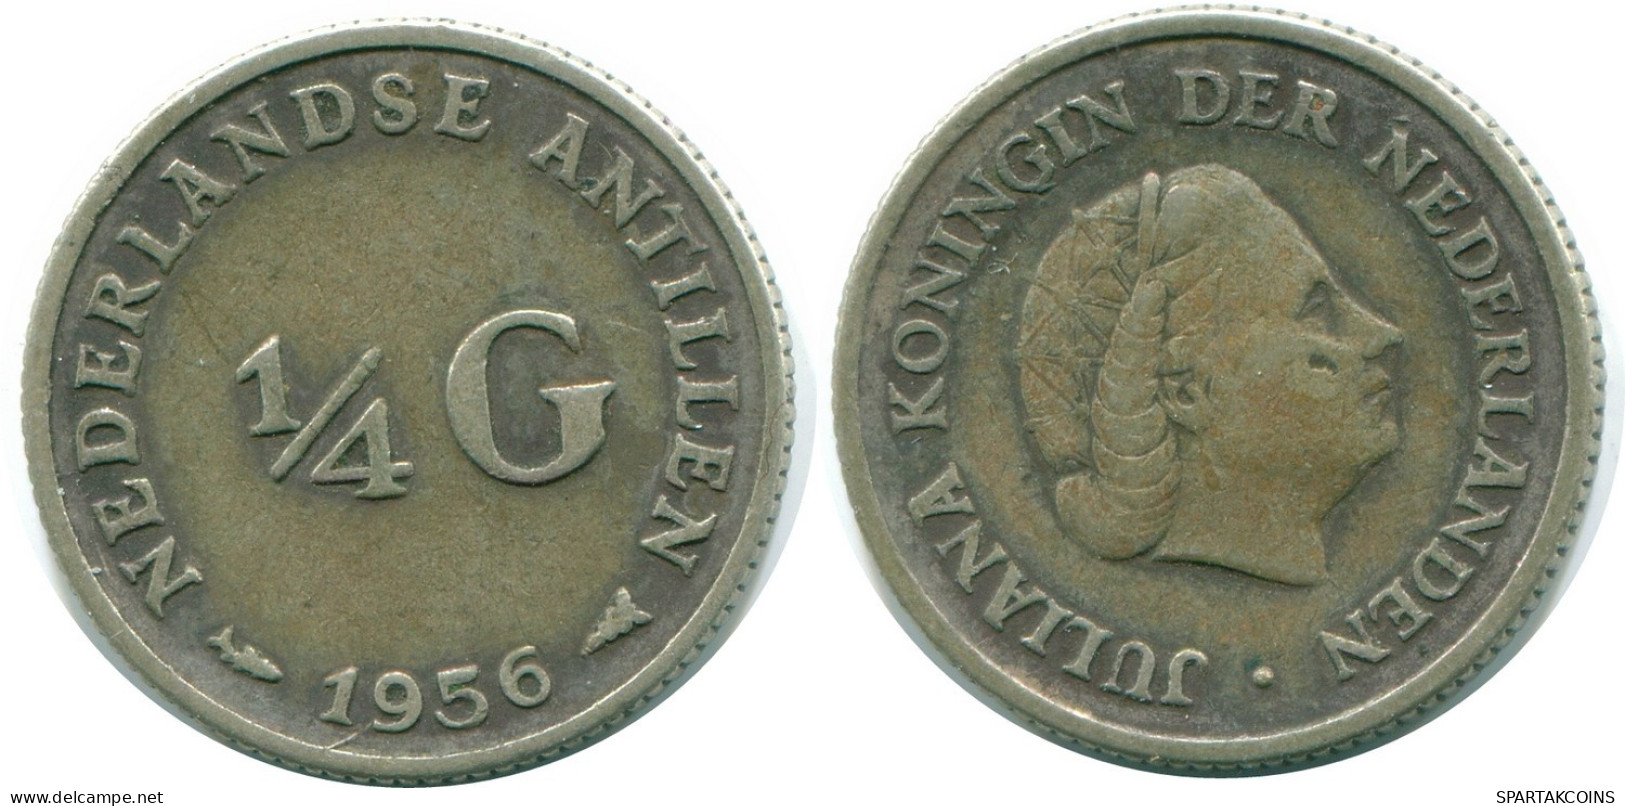 1/4 GULDEN 1956 NIEDERLÄNDISCHE ANTILLEN SILBER Koloniale Münze #NL10965.4.D.A - Antilles Néerlandaises